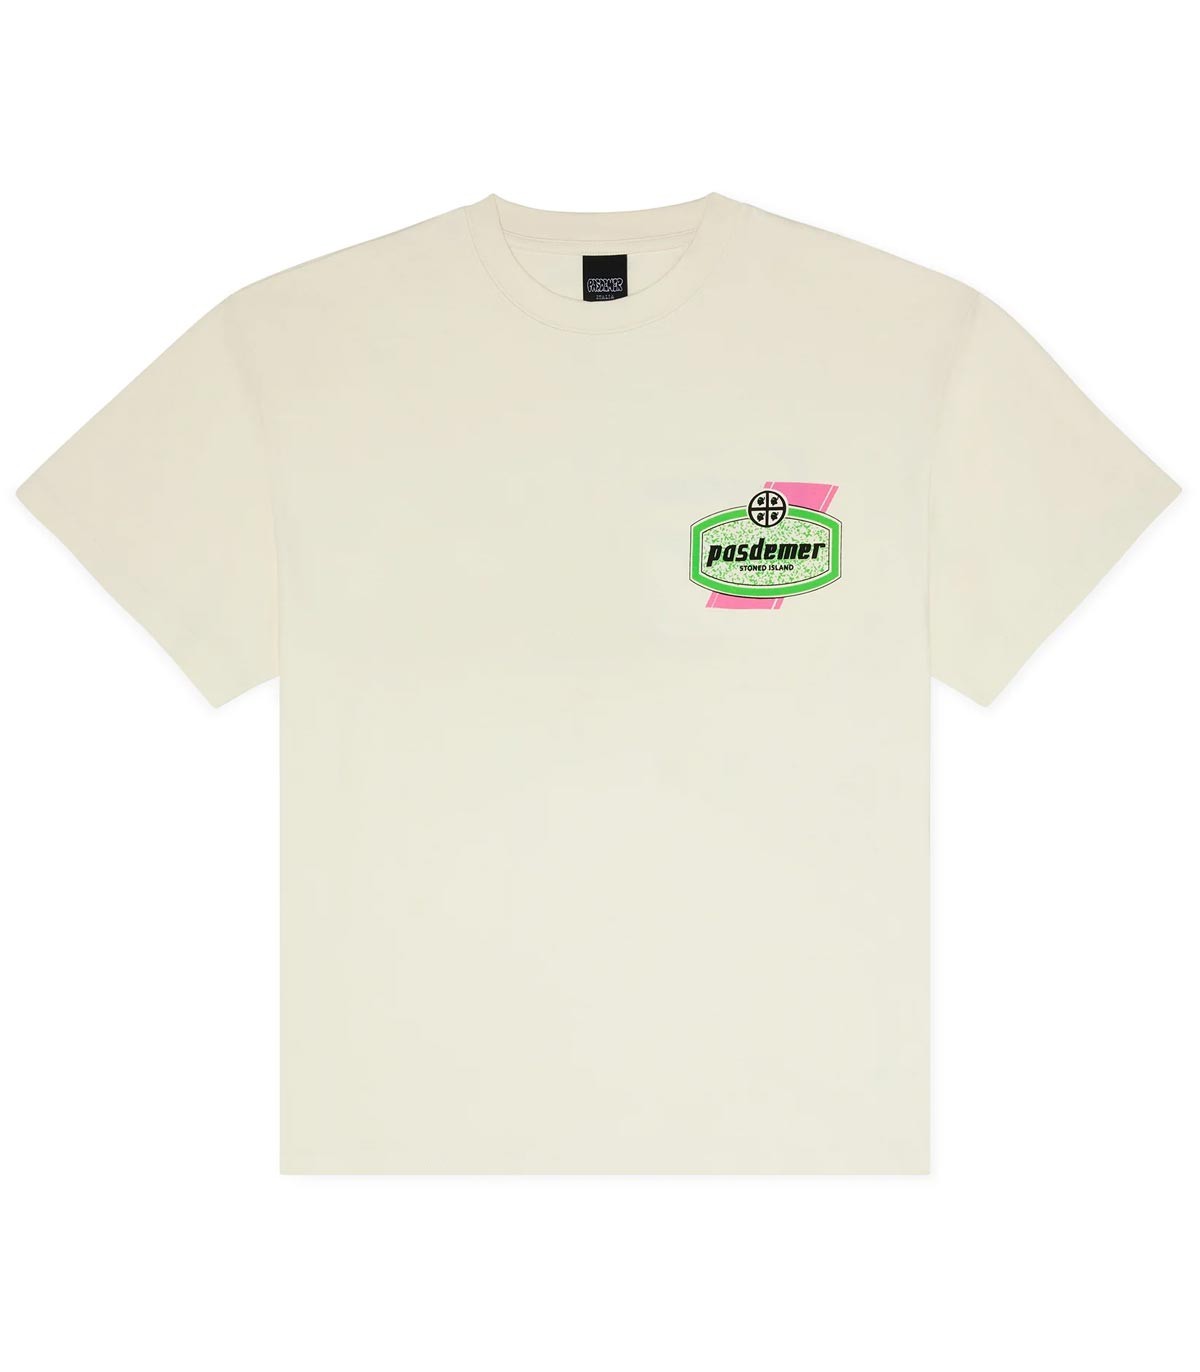 PASDEMER - Camiseta Stoned Island